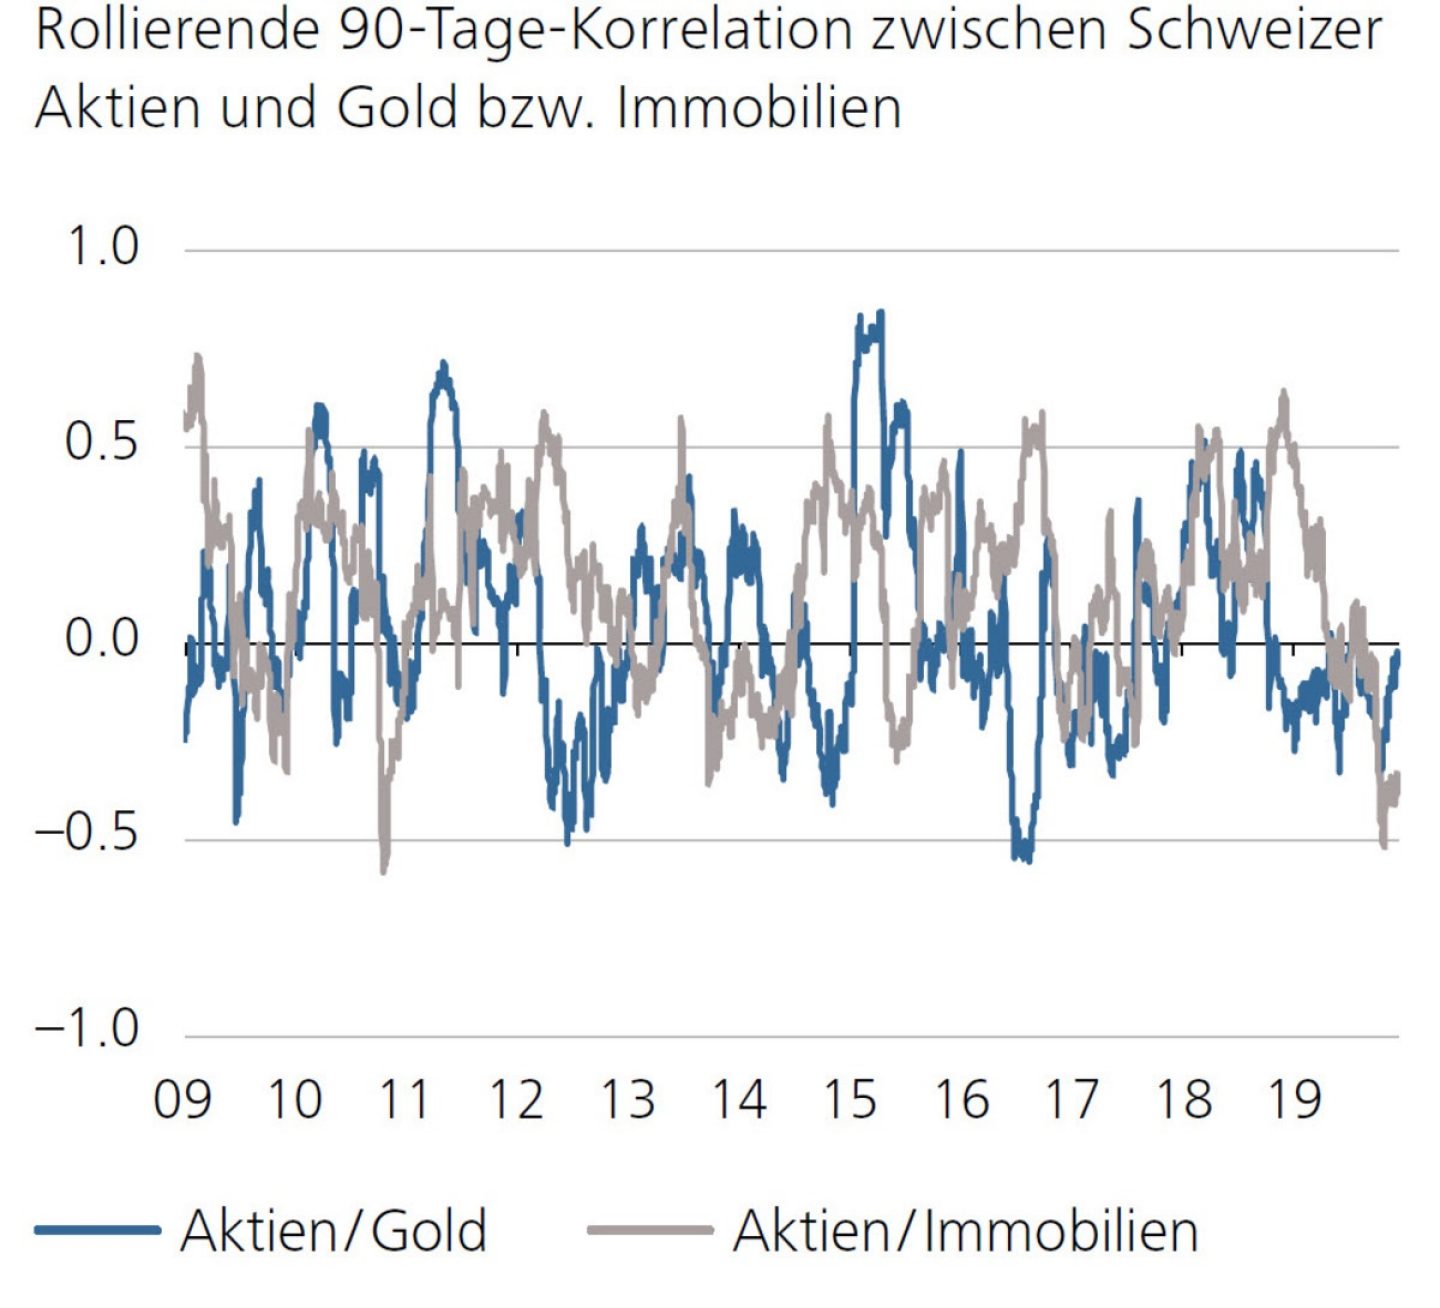 Rollierende 90-Tage-Korrelation zwischen Schweizer Aktien und Gold bzw. Immobilien